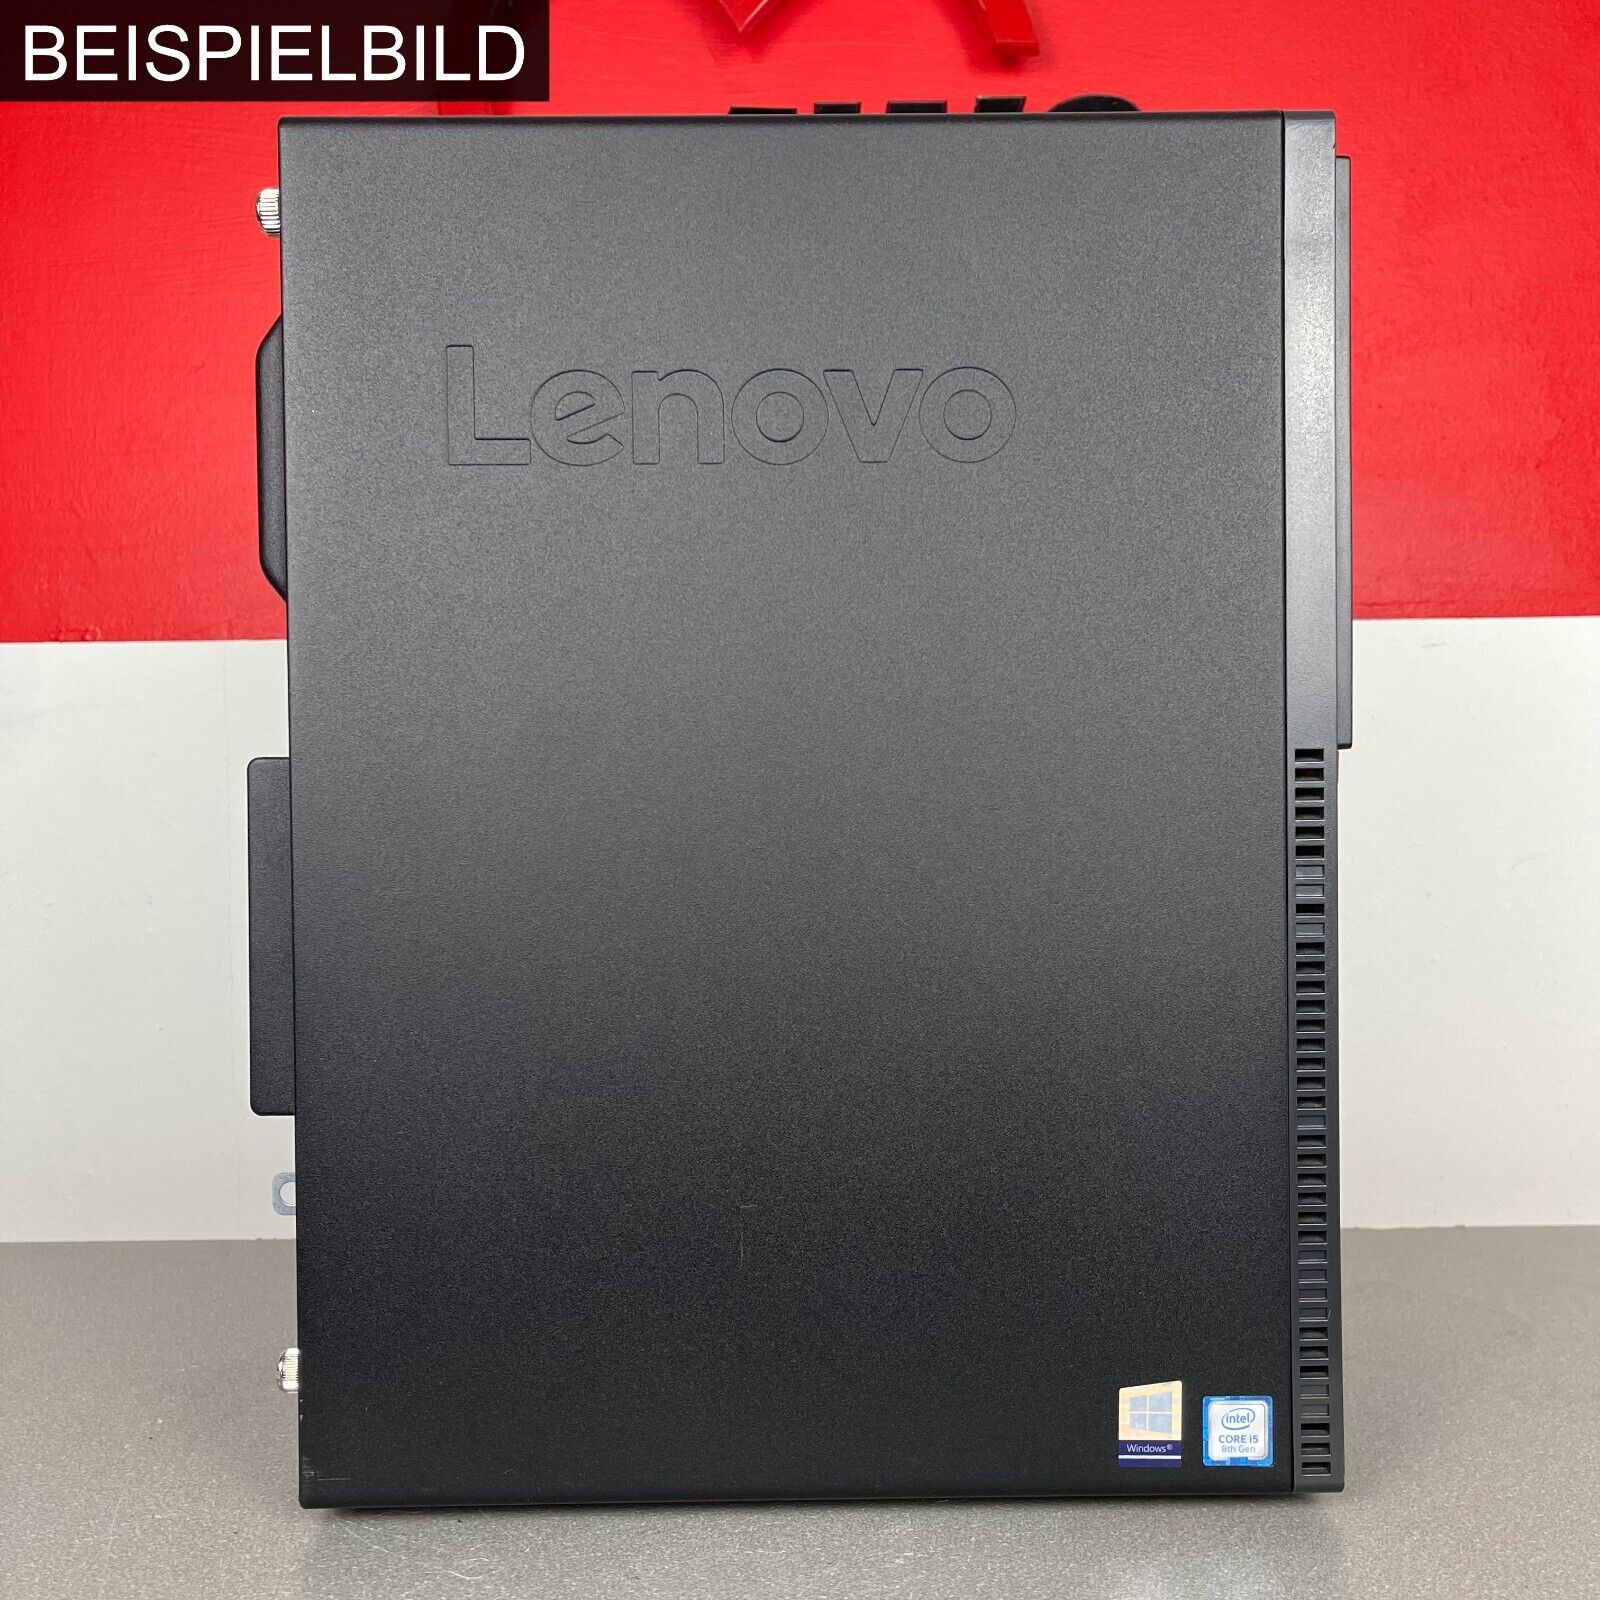 Lenovo ThinkCentre M720t 10SQ 002GGE (Erweitert)